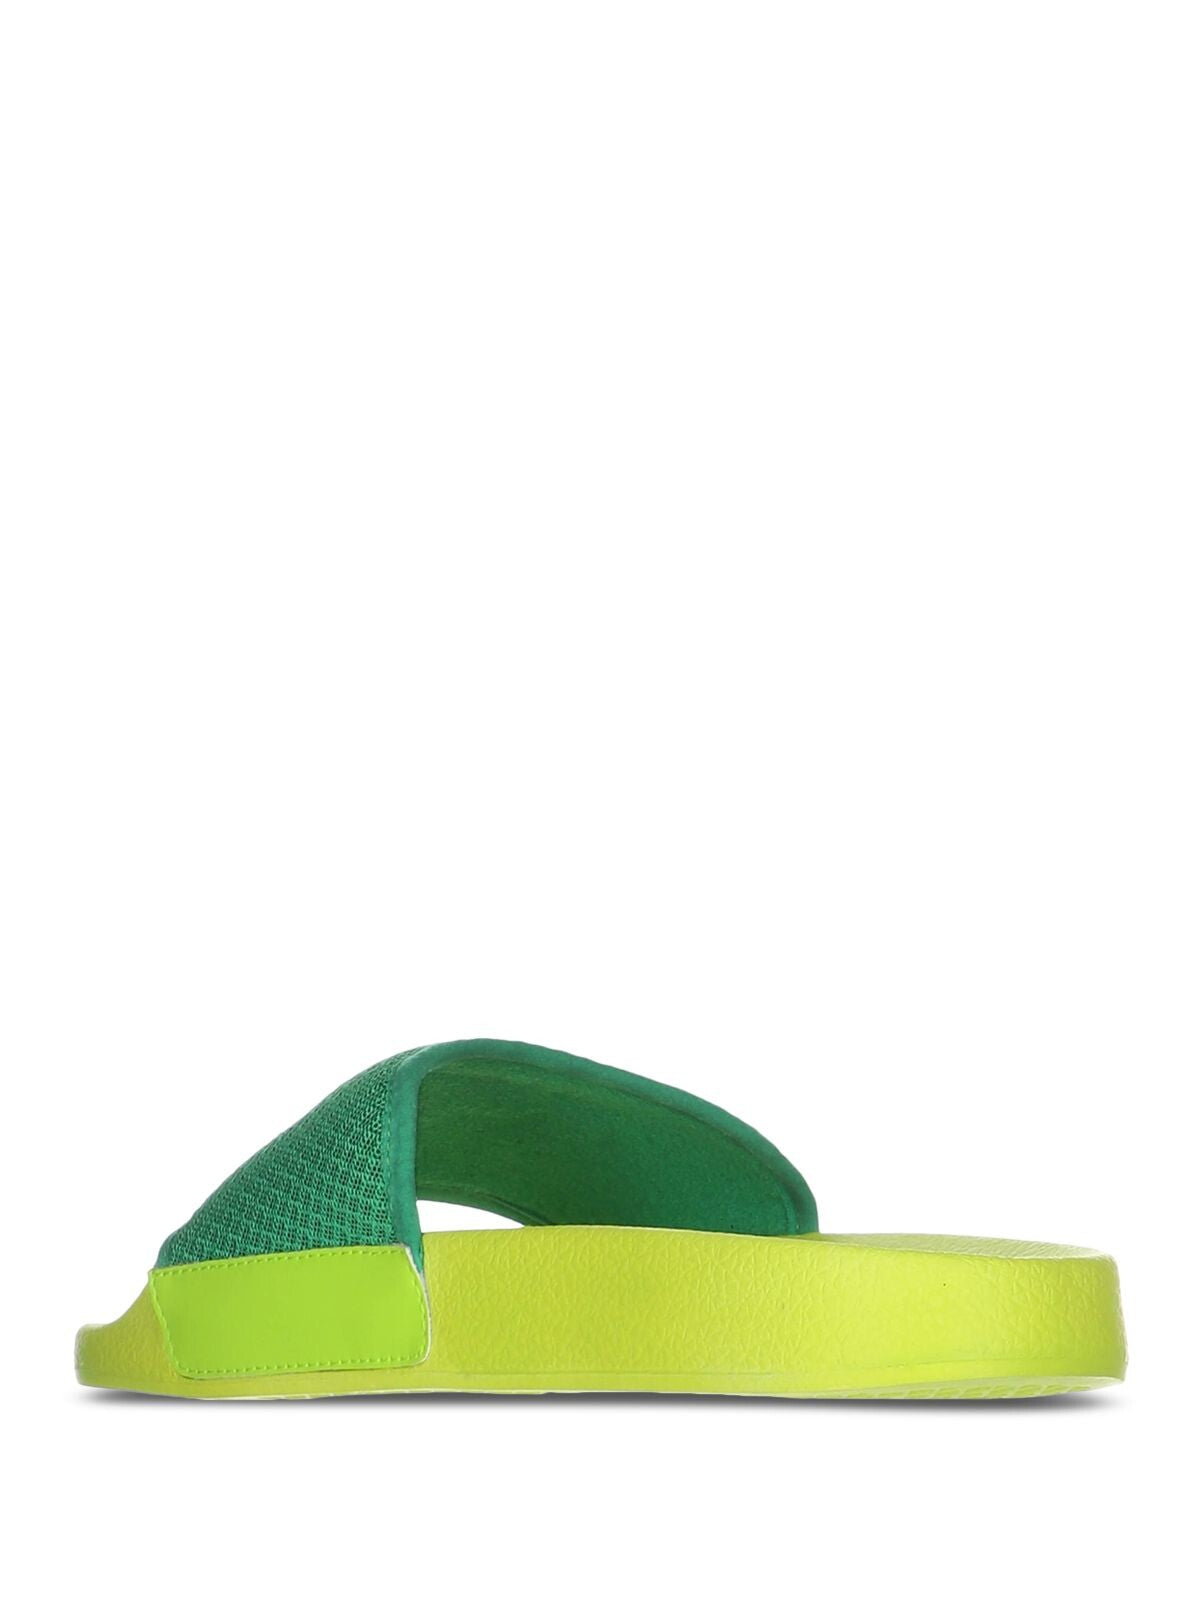 PRINCE Womens Green Logo Comfort Prism Round Toe Platform Slip On Slide Sandals Shoes 38 M